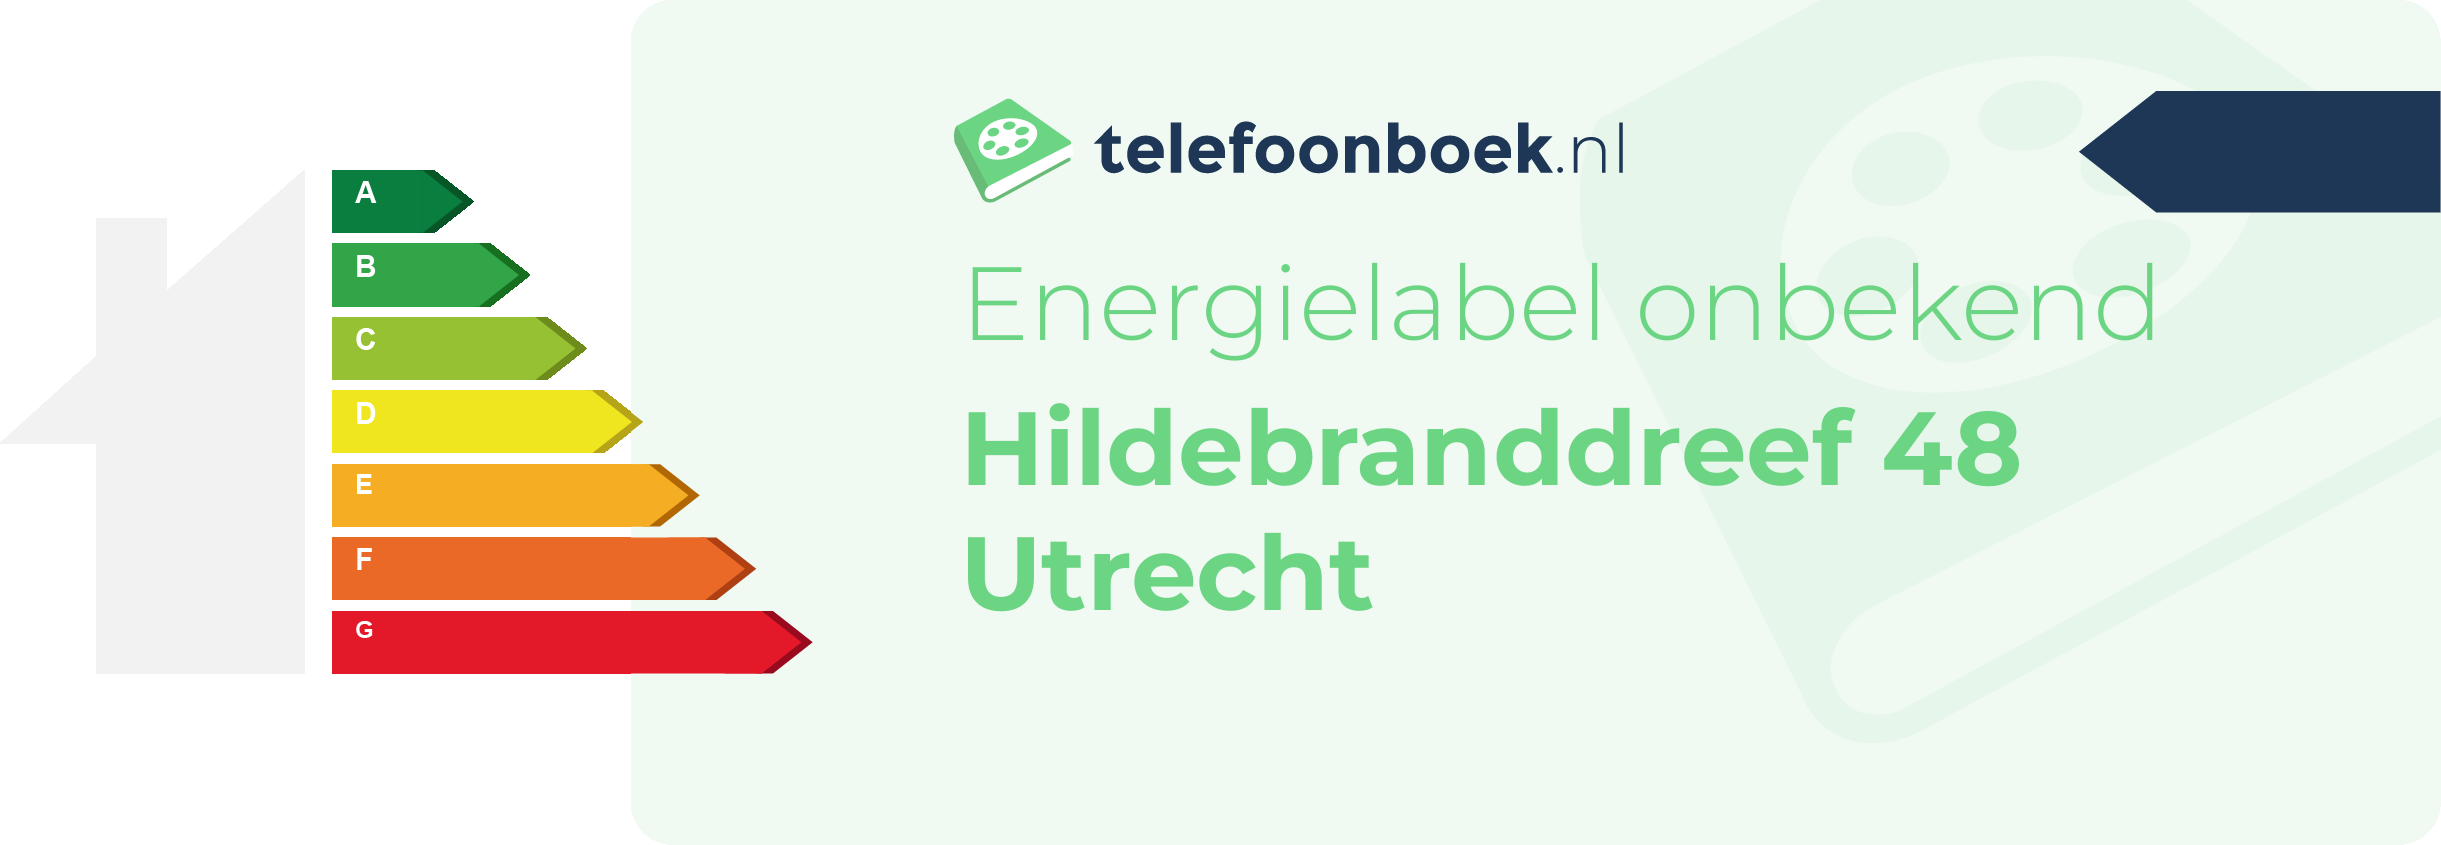 Energielabel Hildebranddreef 48 Utrecht